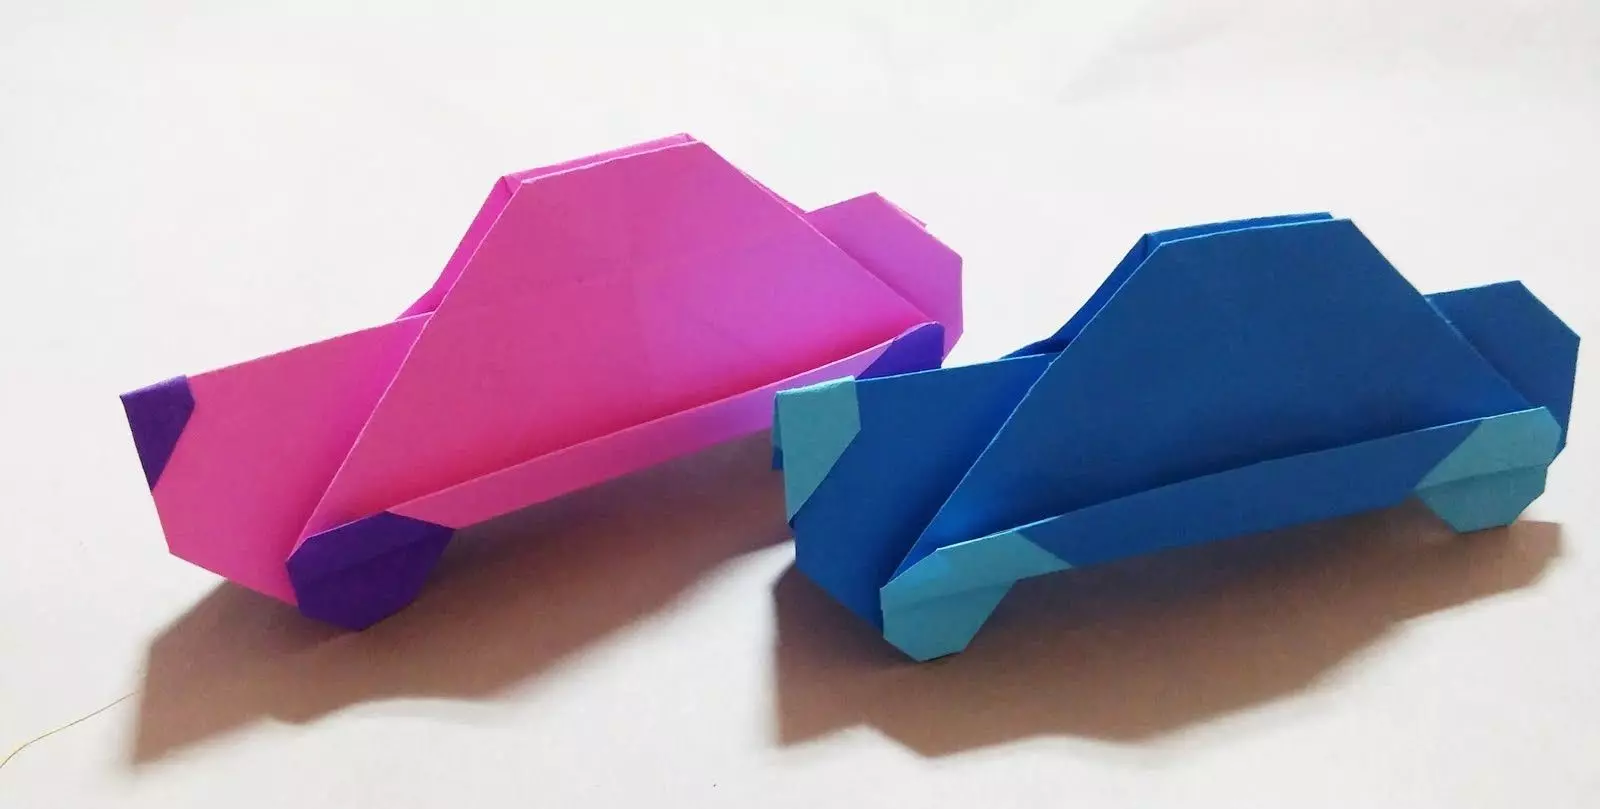 Iwe Origami fun awọn ọmọde 7-8 ọdun: awọn igbero ti o rọrun fun awọn ọmọkunrin ati awọn ọmọbirin. Bi o ṣe le ṣe ilamio funrararẹ ni awọn ipele? 26984_53